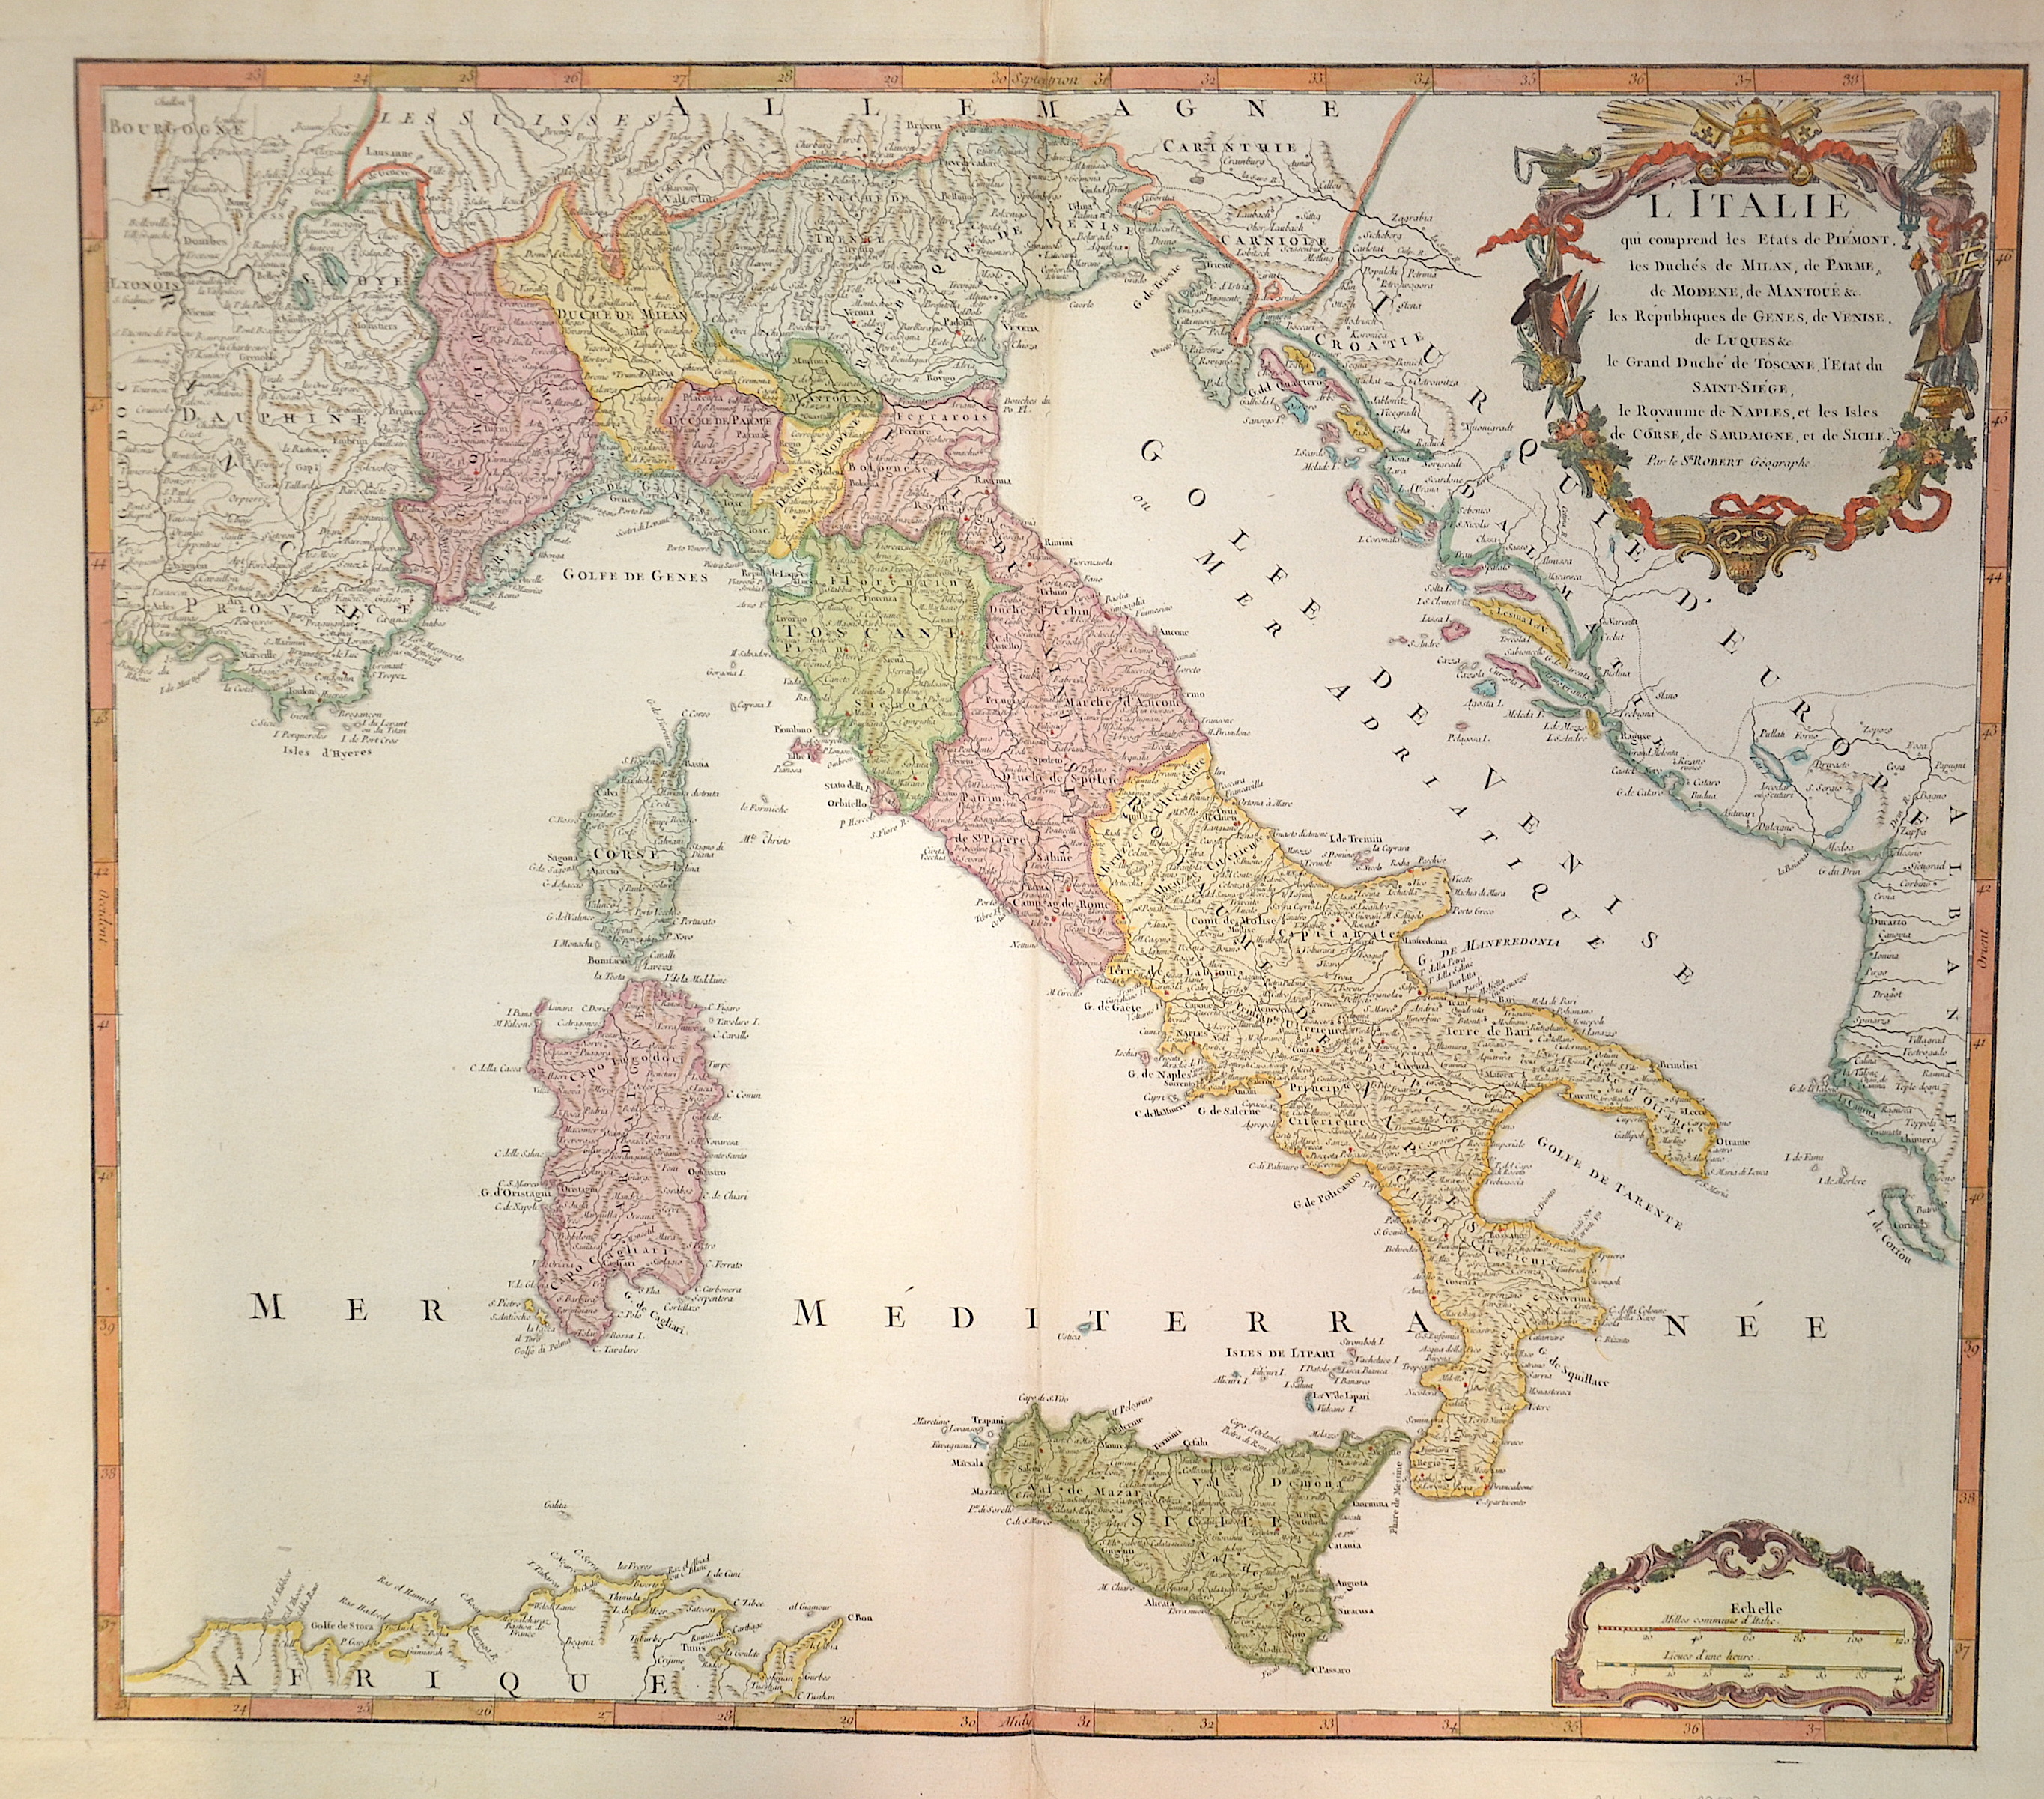 Robert  L’Italie qui comprend les Etats de Piemont, les Duches de Milan, de Parme, de Modene, de Mantoue..